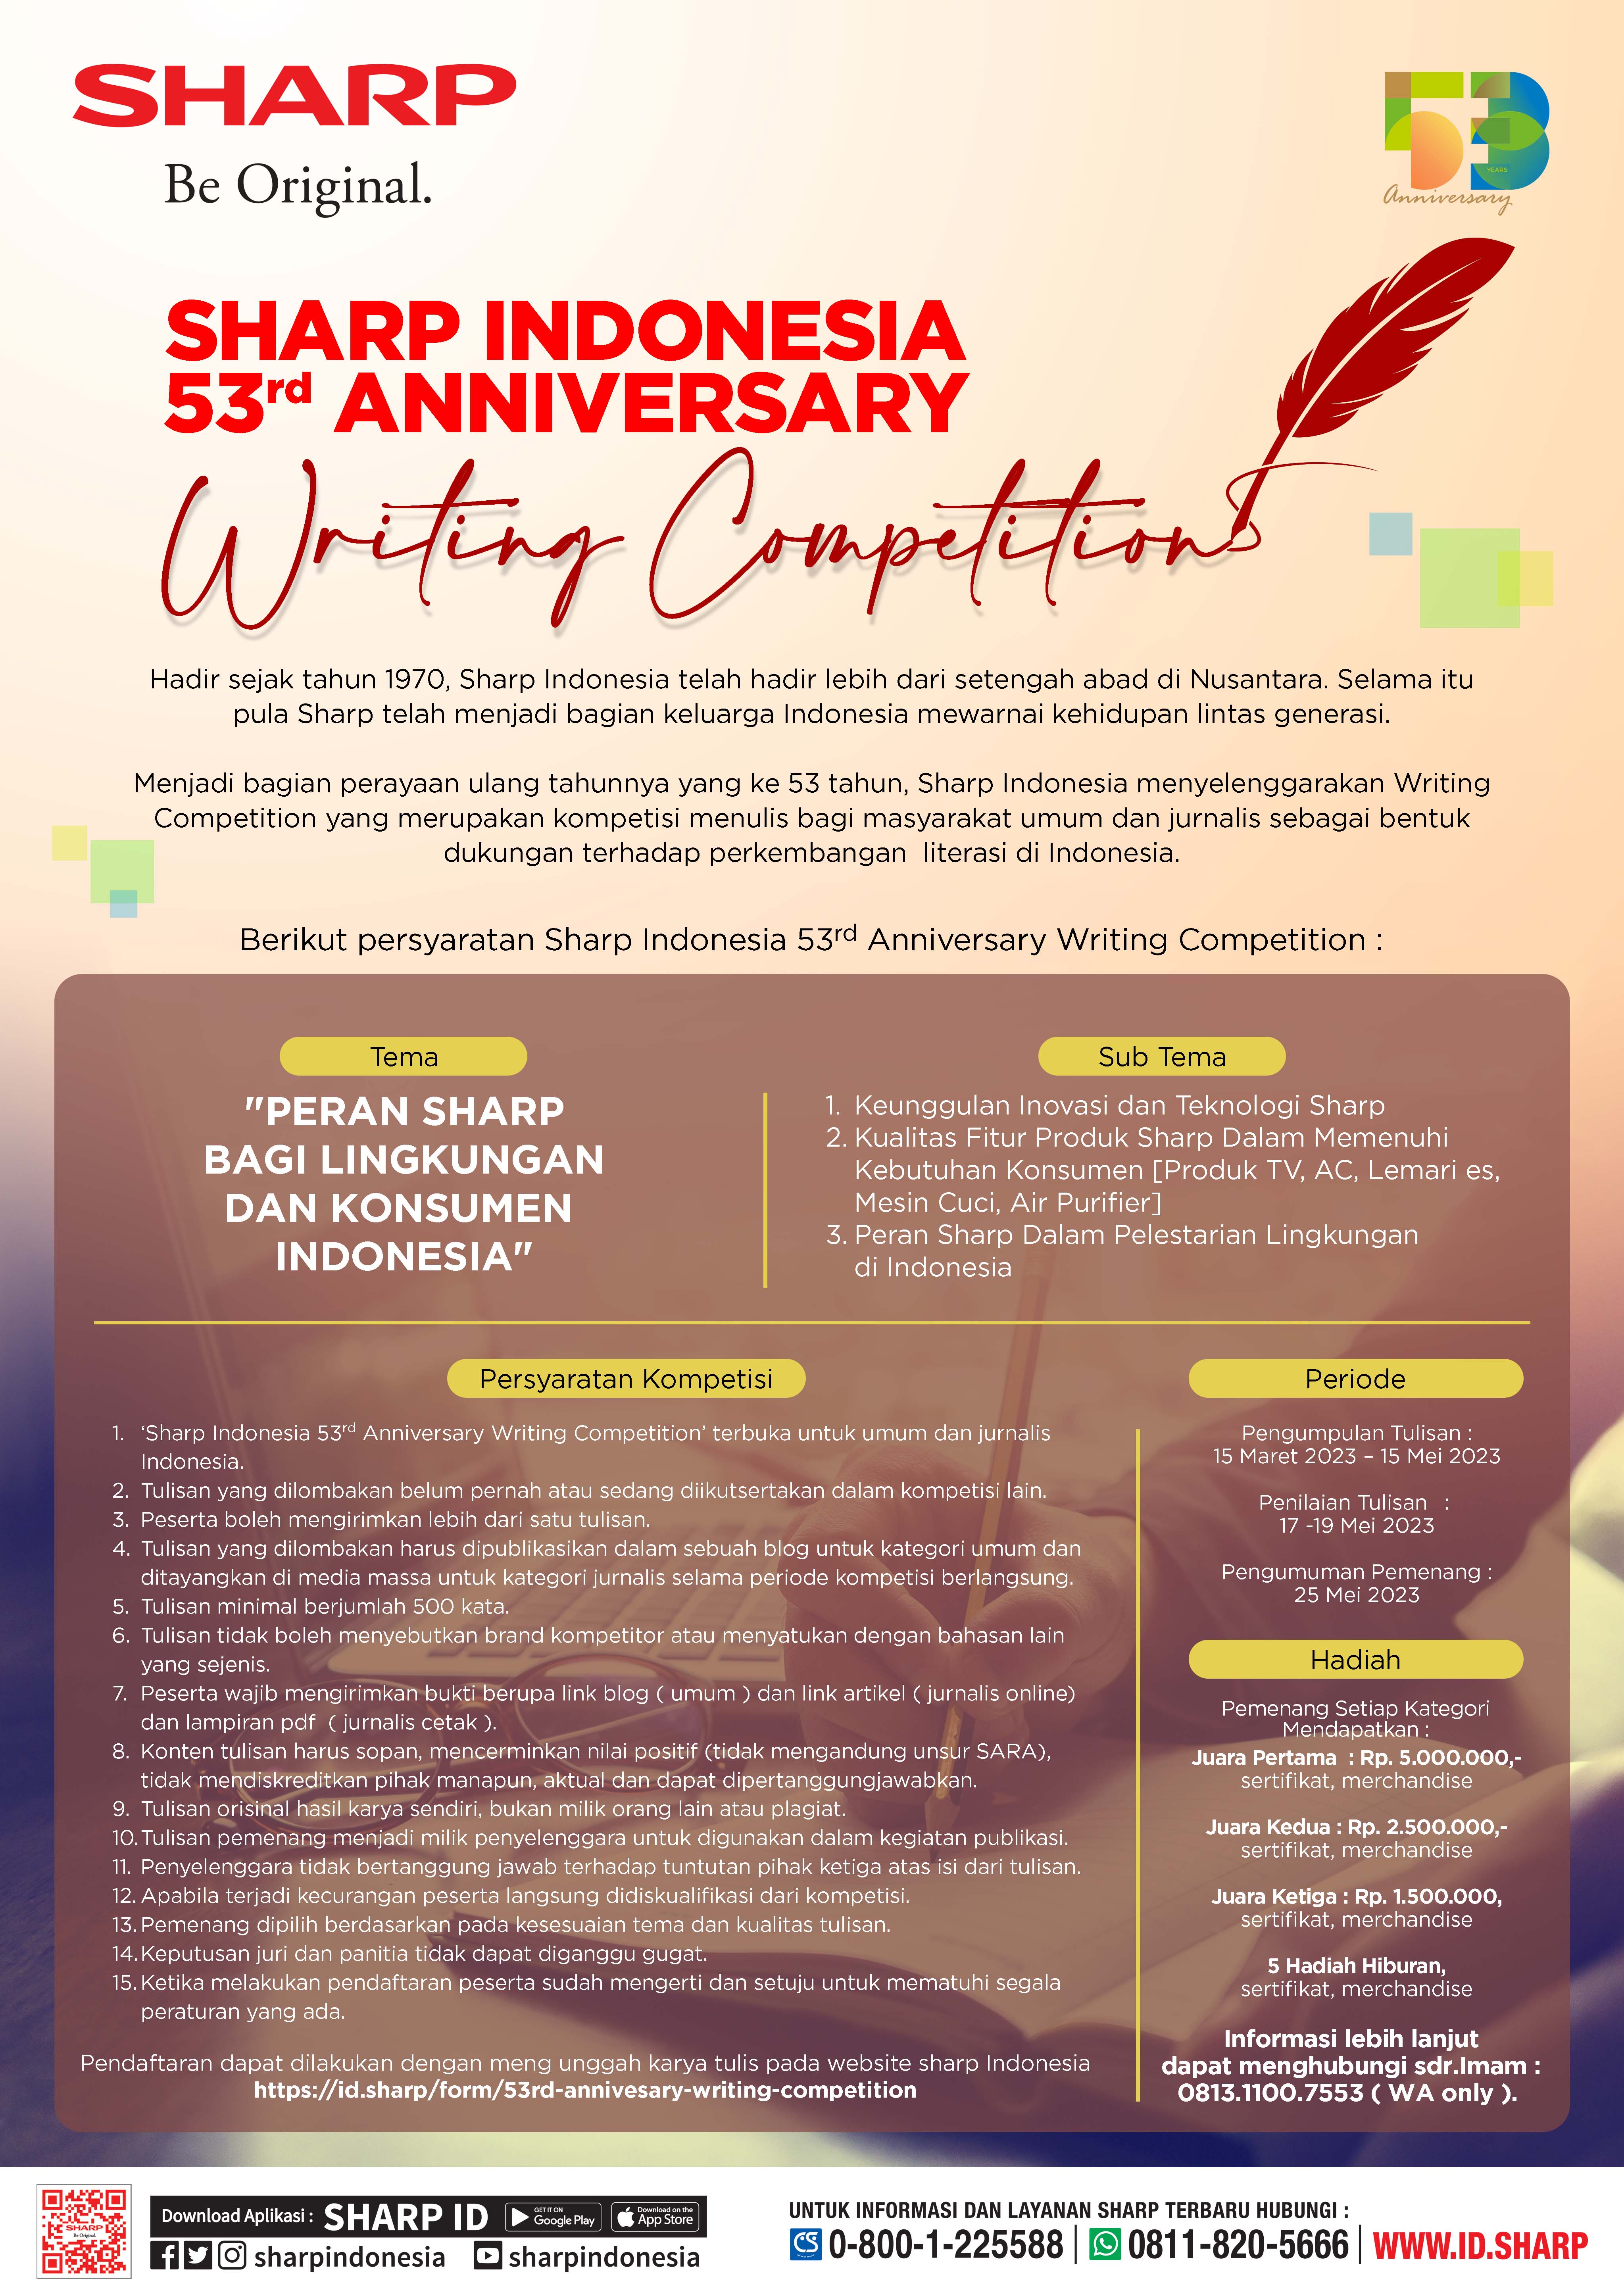 Persyaratana Sharp 53 anniversary writing competition 